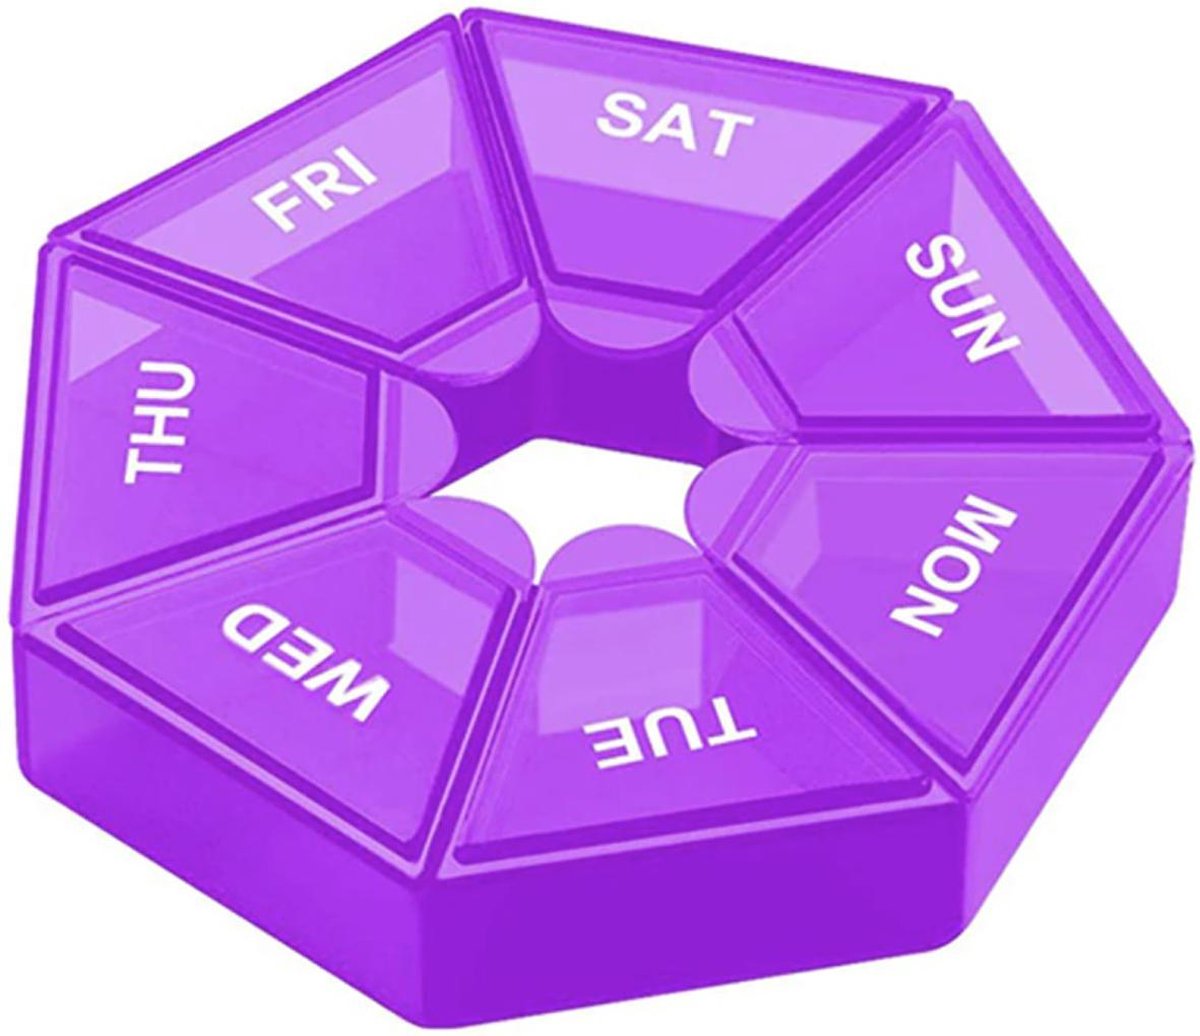 Cabantis Hexagon Mini-Pillendoos|Pillen Organizer|Medicijn Doosje|Pillendoos 7 Dagen|Paars